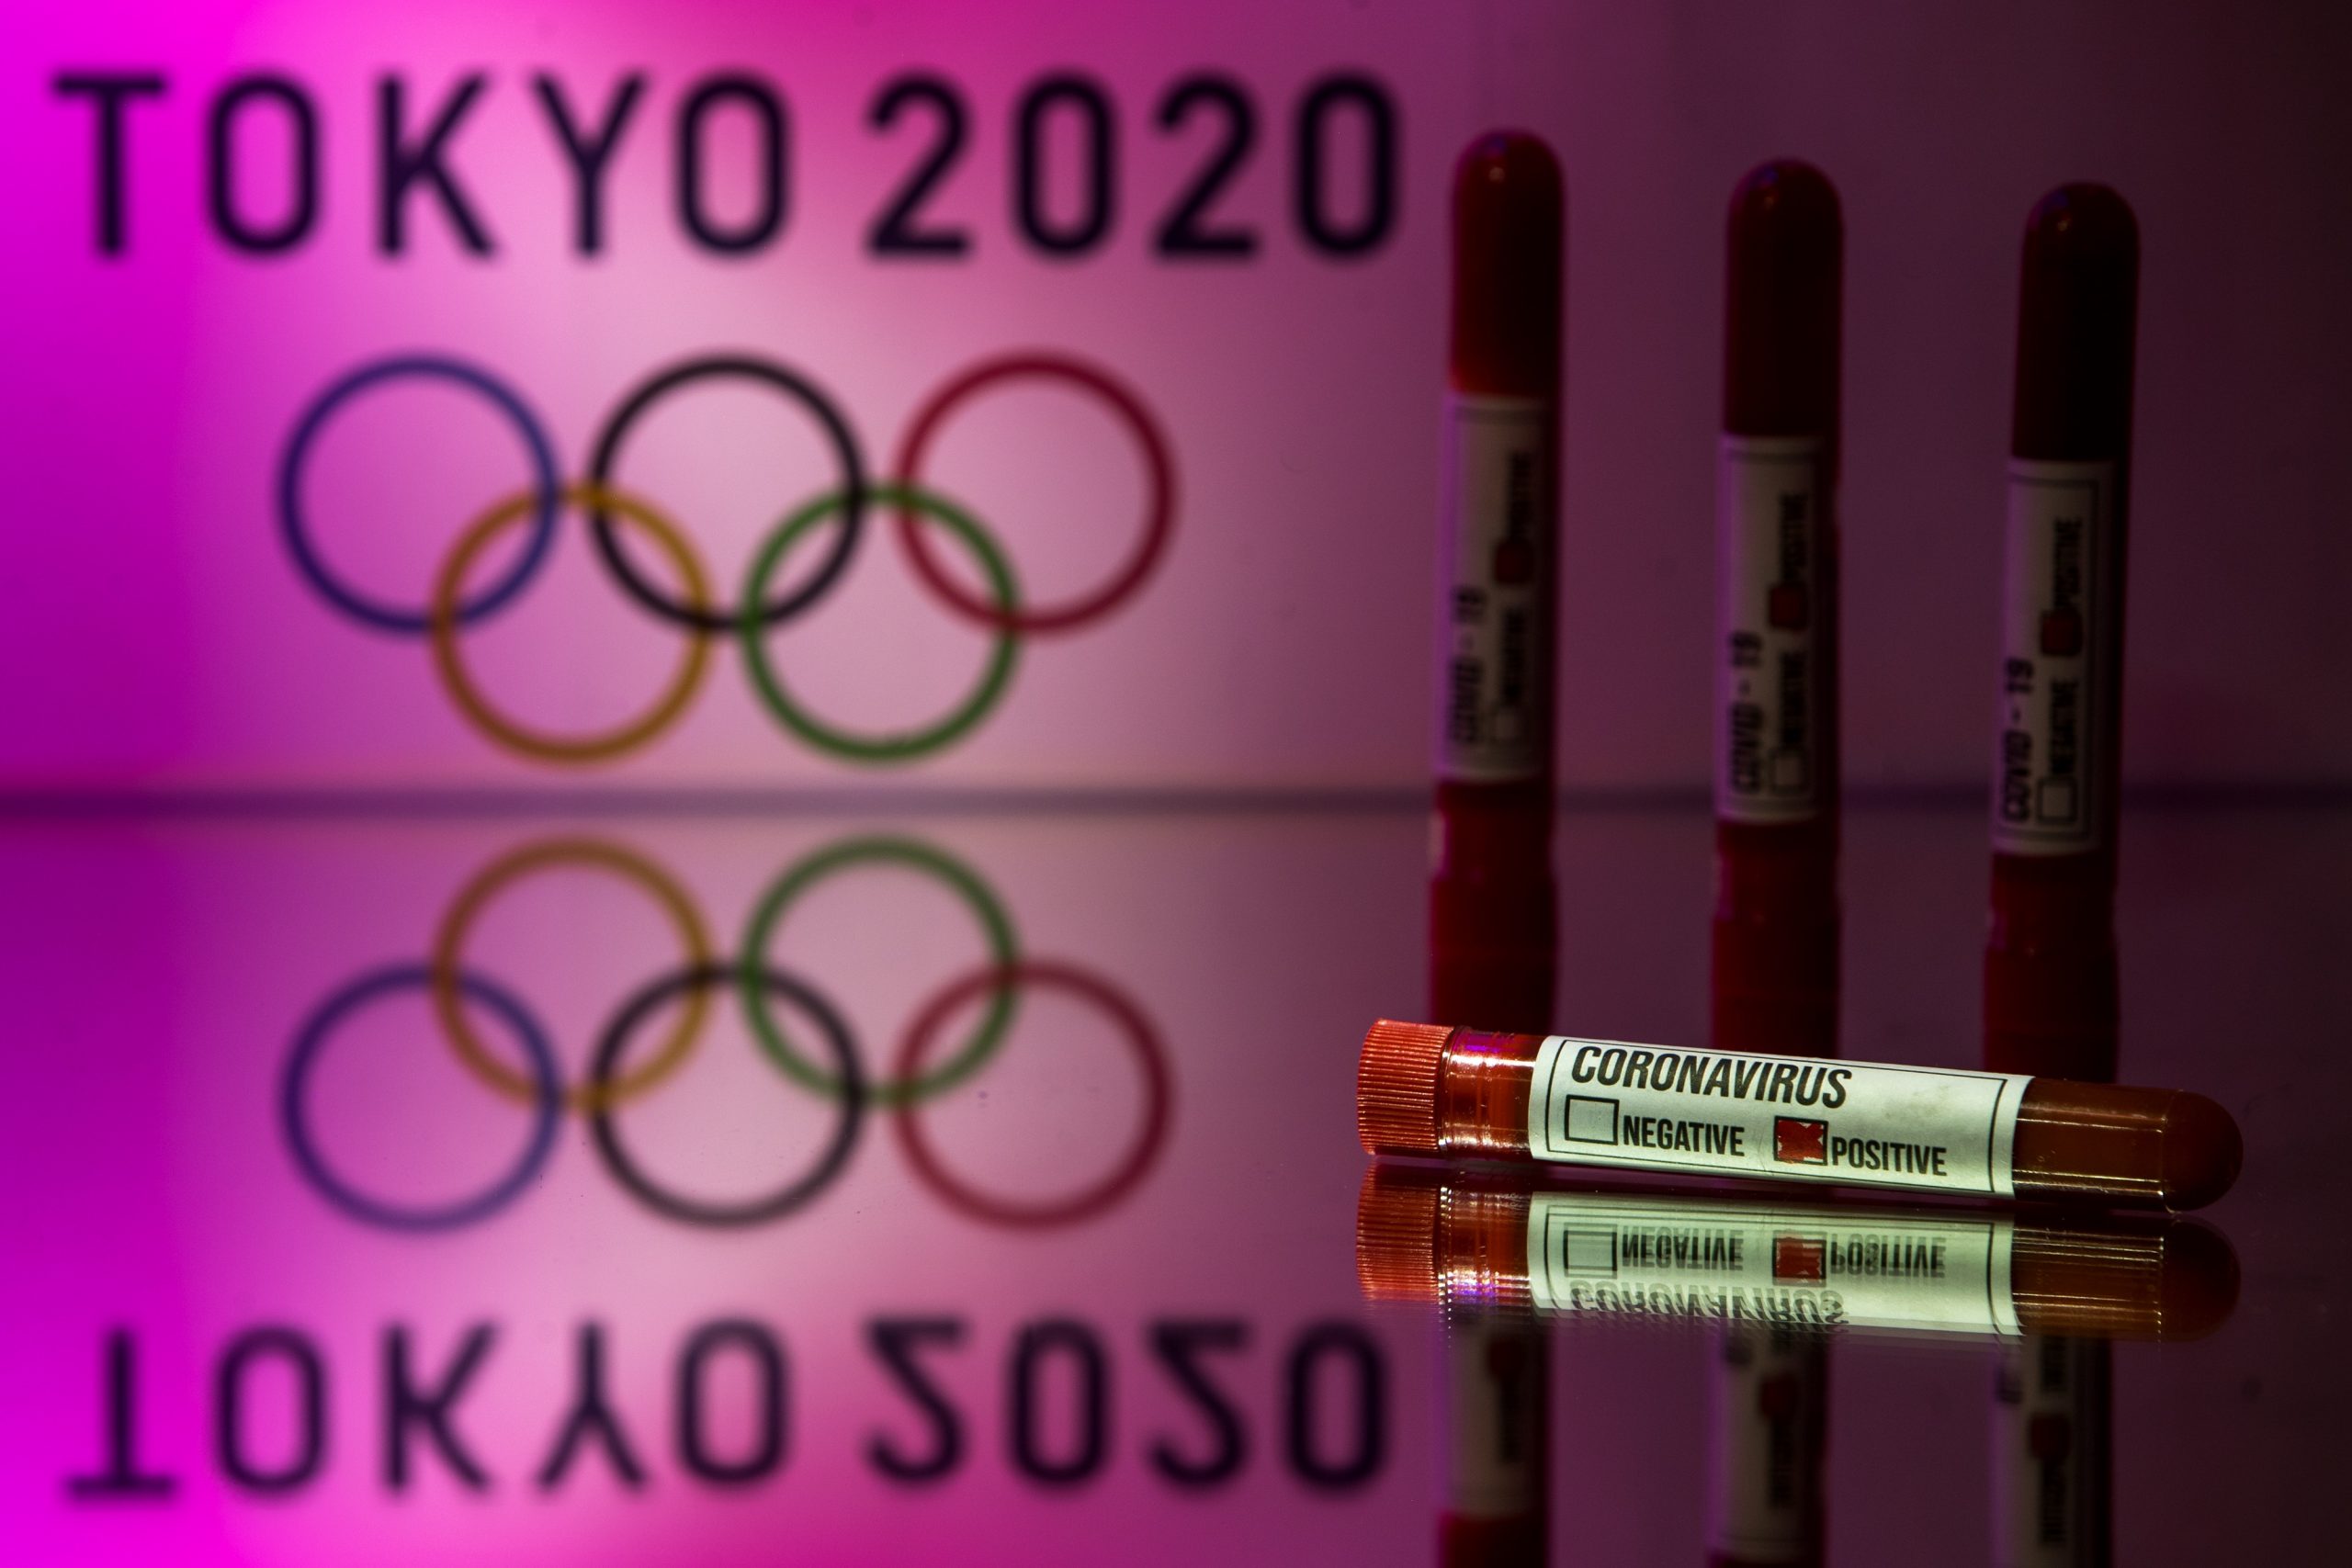 30.03.2020., Zagreb -  Nakon odgadjanja Olimpijskih igra Tokio 2020. proslog tjedna zbog pandemije koronavirusa (COVID-19) za iducu godinu. Danas je sluzbeno potvrdjeno da ce se Olimpijske igre Tokio 2020. odrzati od 23. srpnja do 8. kolovoza 2021., a Paraolimpijske igre od 24. kolovoza do 5. rujna 2021. godine.
Photo: Igor Kralj/PIXSELL